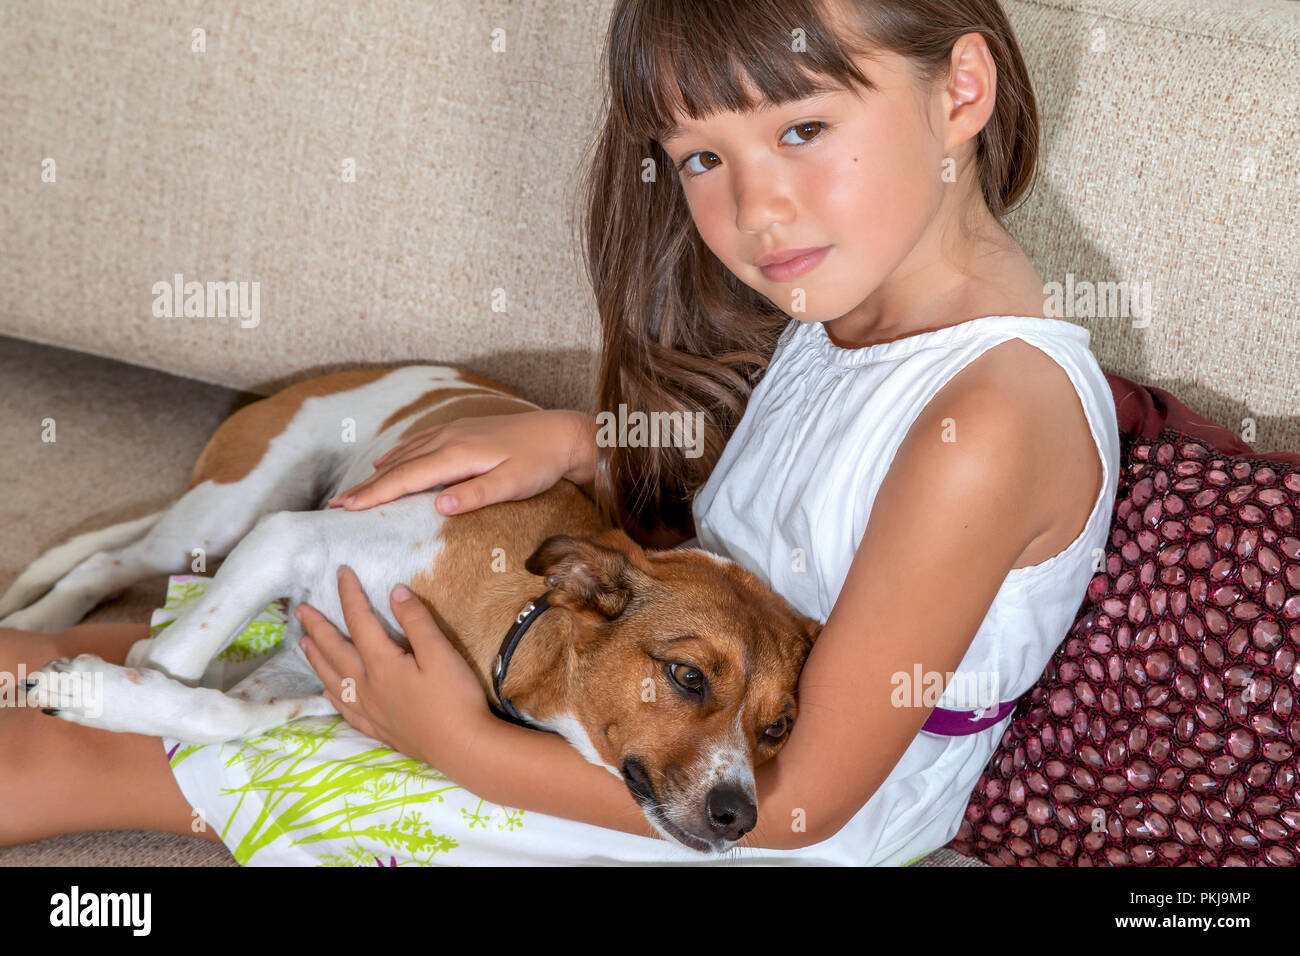 Un bambino di sei anni ragazza con il suo animale femmina su un divano Foto Stock